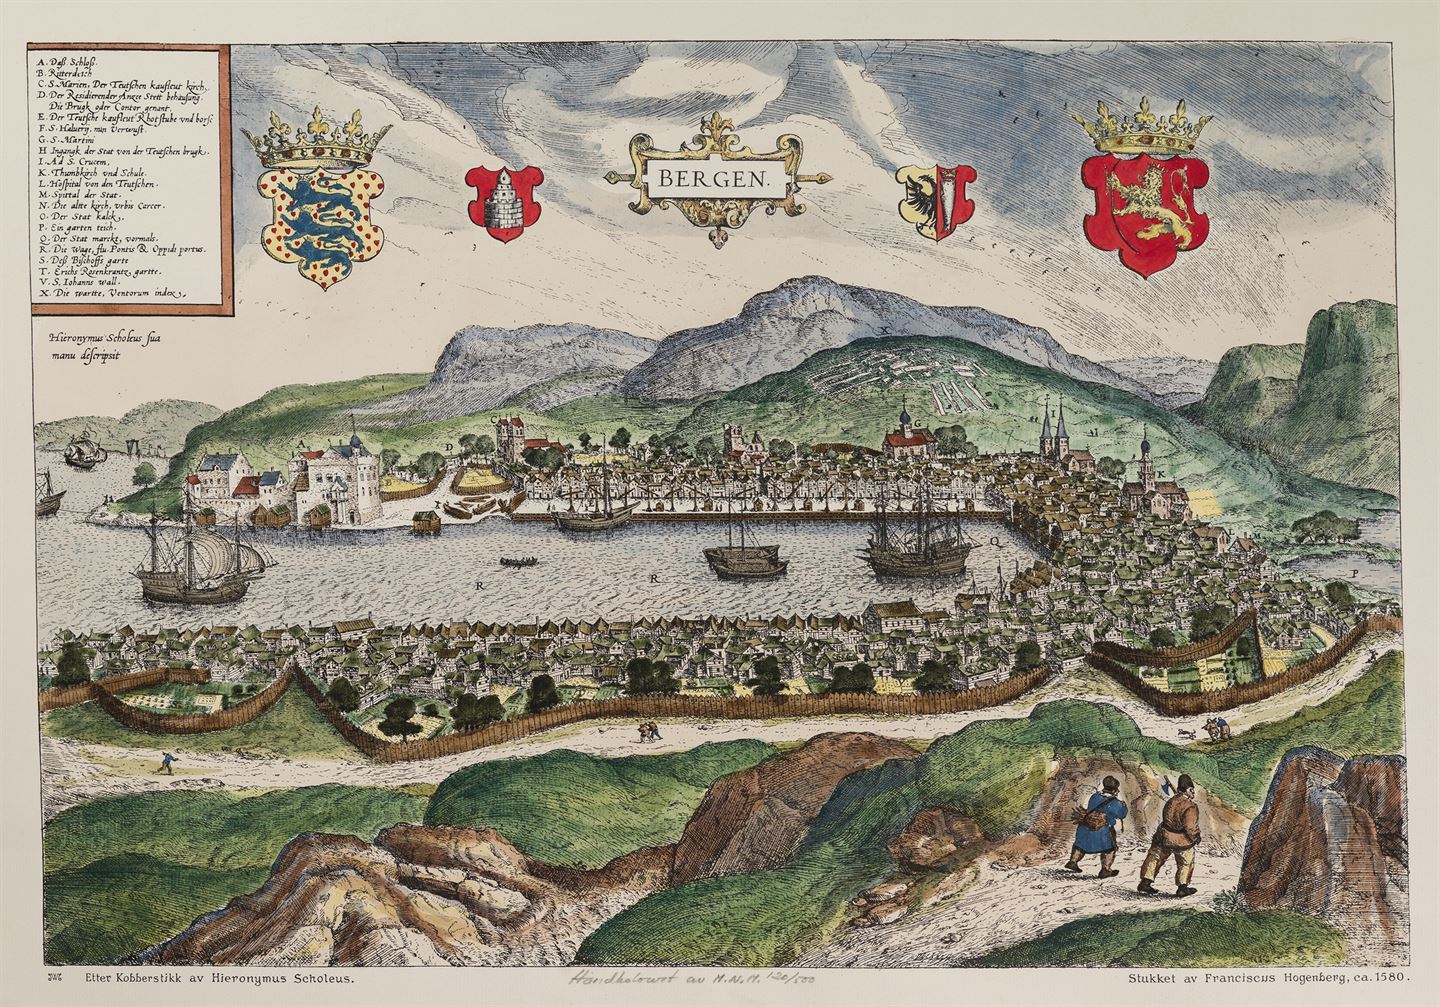 Teikning av Bergen på 1500-talet.